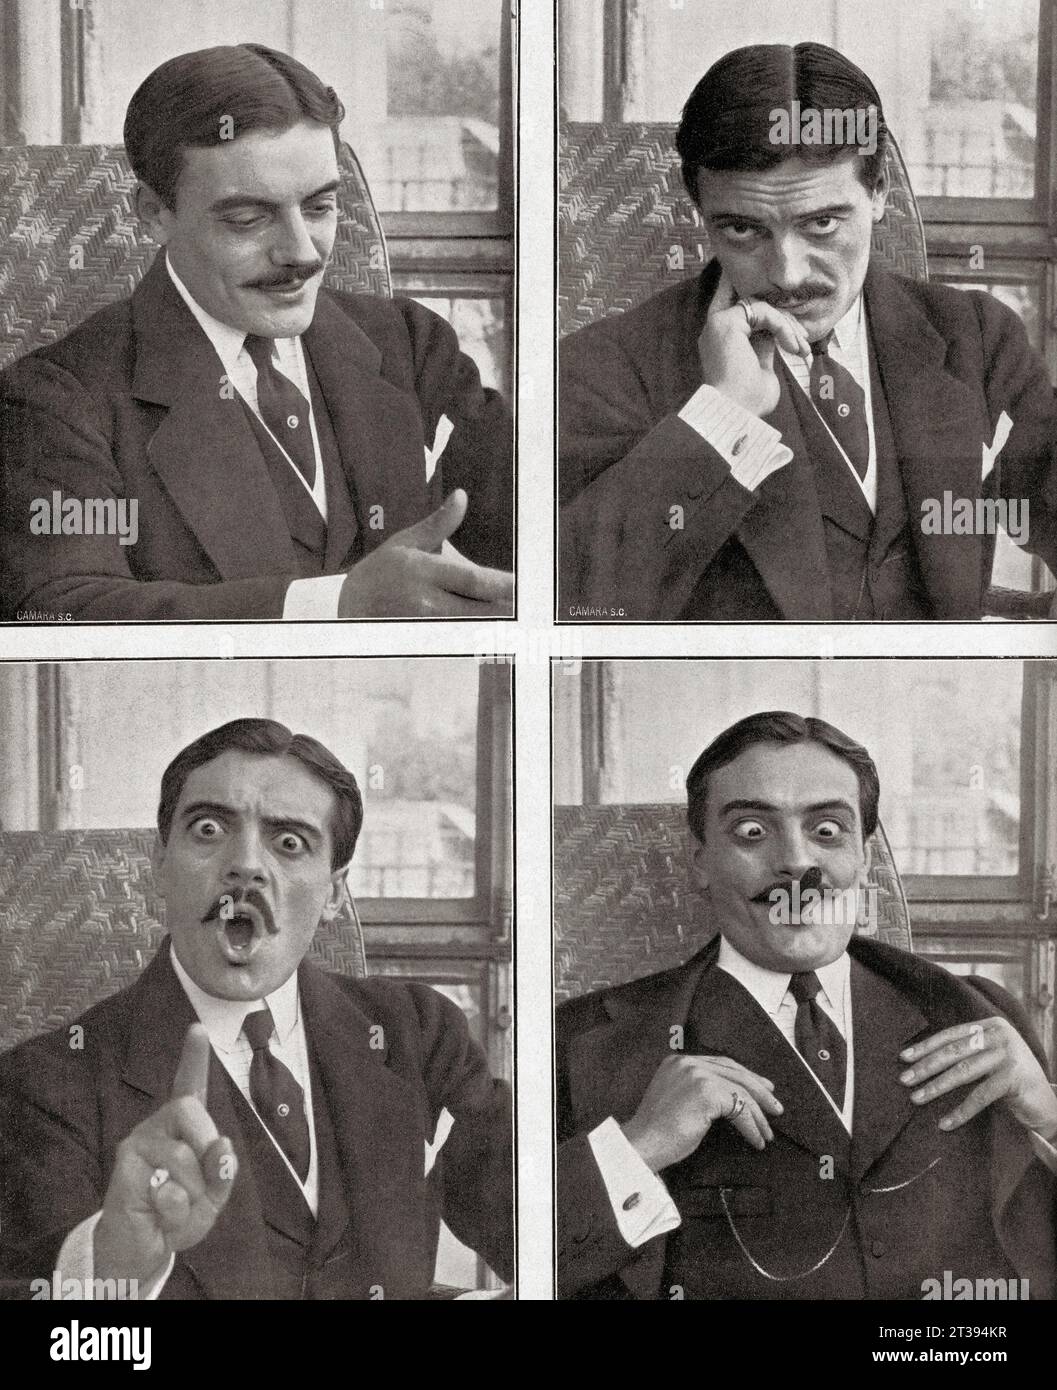 Gabriel Leuvielle, 1883–1925, alias Max Linder. Französischer Schauspieler, Regisseur, Drehbuchautor, Produzent und Komiker der Stummfilmzeit. Aus Mundo Grafico, veröffentlicht 1912. Stockfoto